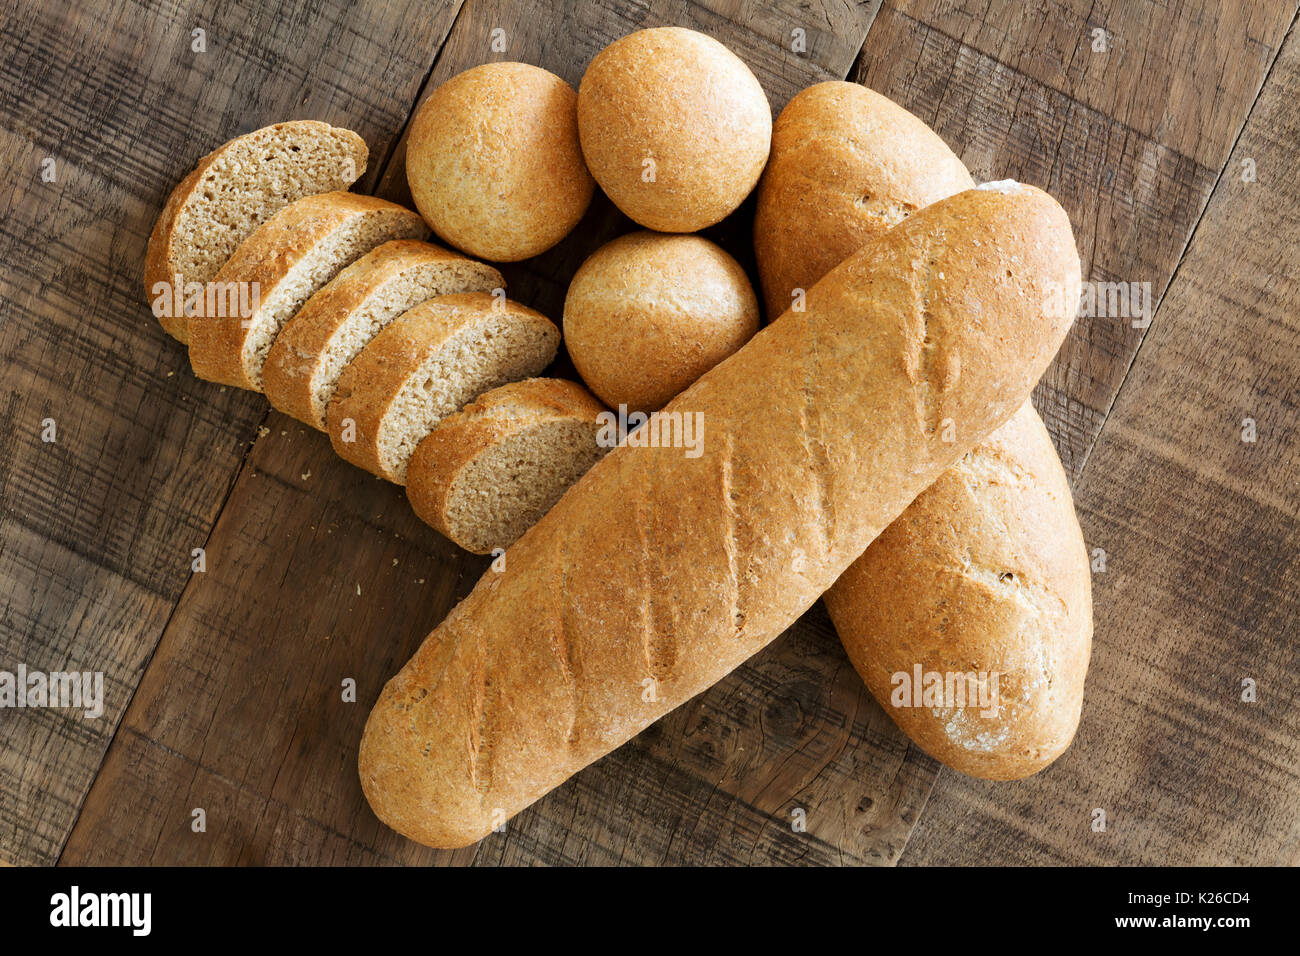 Bread rolls on a bread board Stock Photo